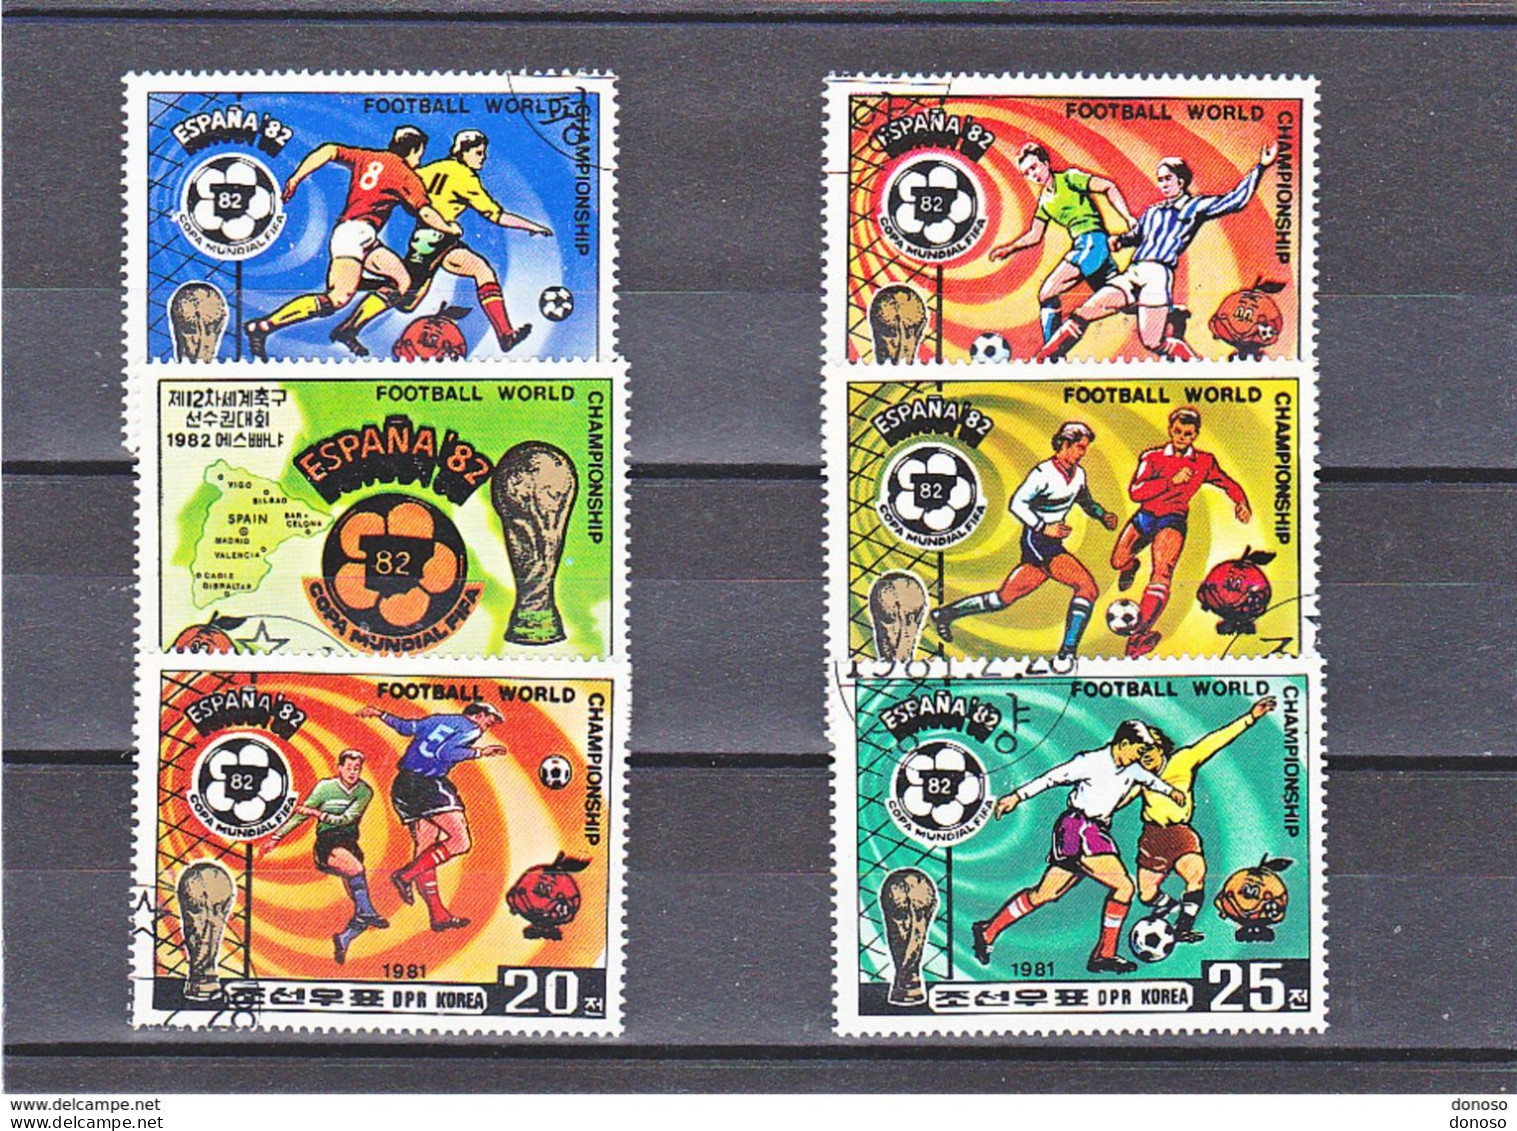 COREE DU NORD 1981 Coupe Du Monde De Football, Espagne Michel 2099-2104, Yvert 1643-1647 + PA Oblitéré, Used - Corea Del Norte